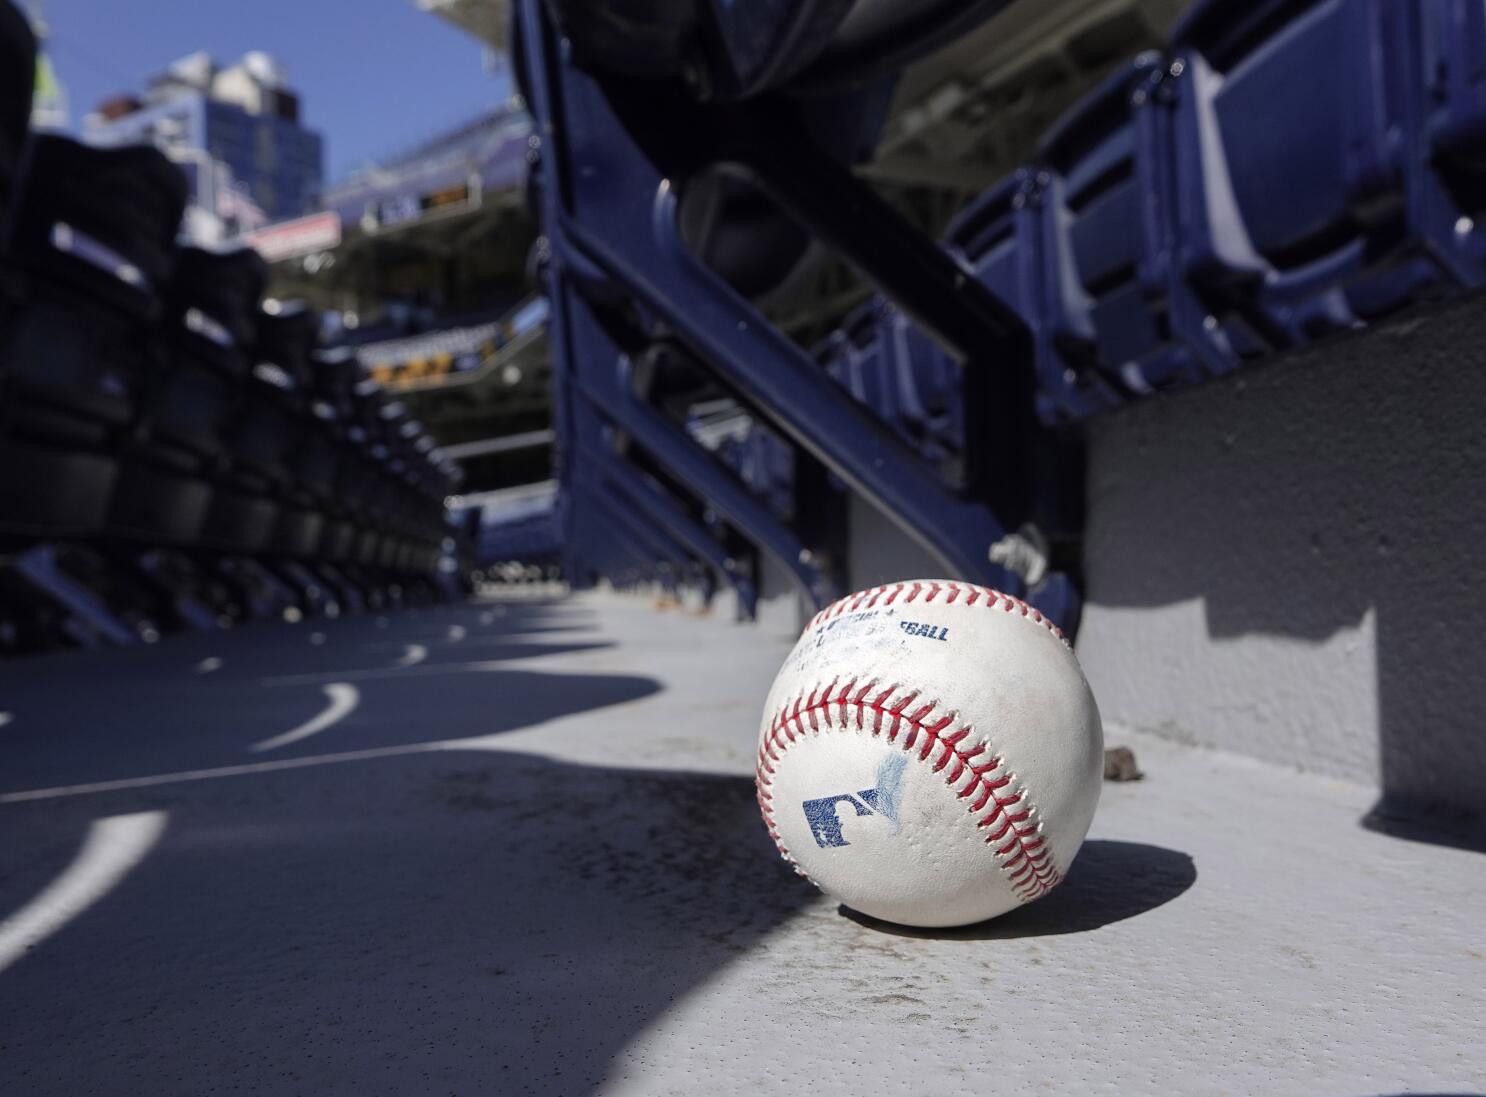 San Diego Padres Original Autographed Baseball MLB Balls for sale